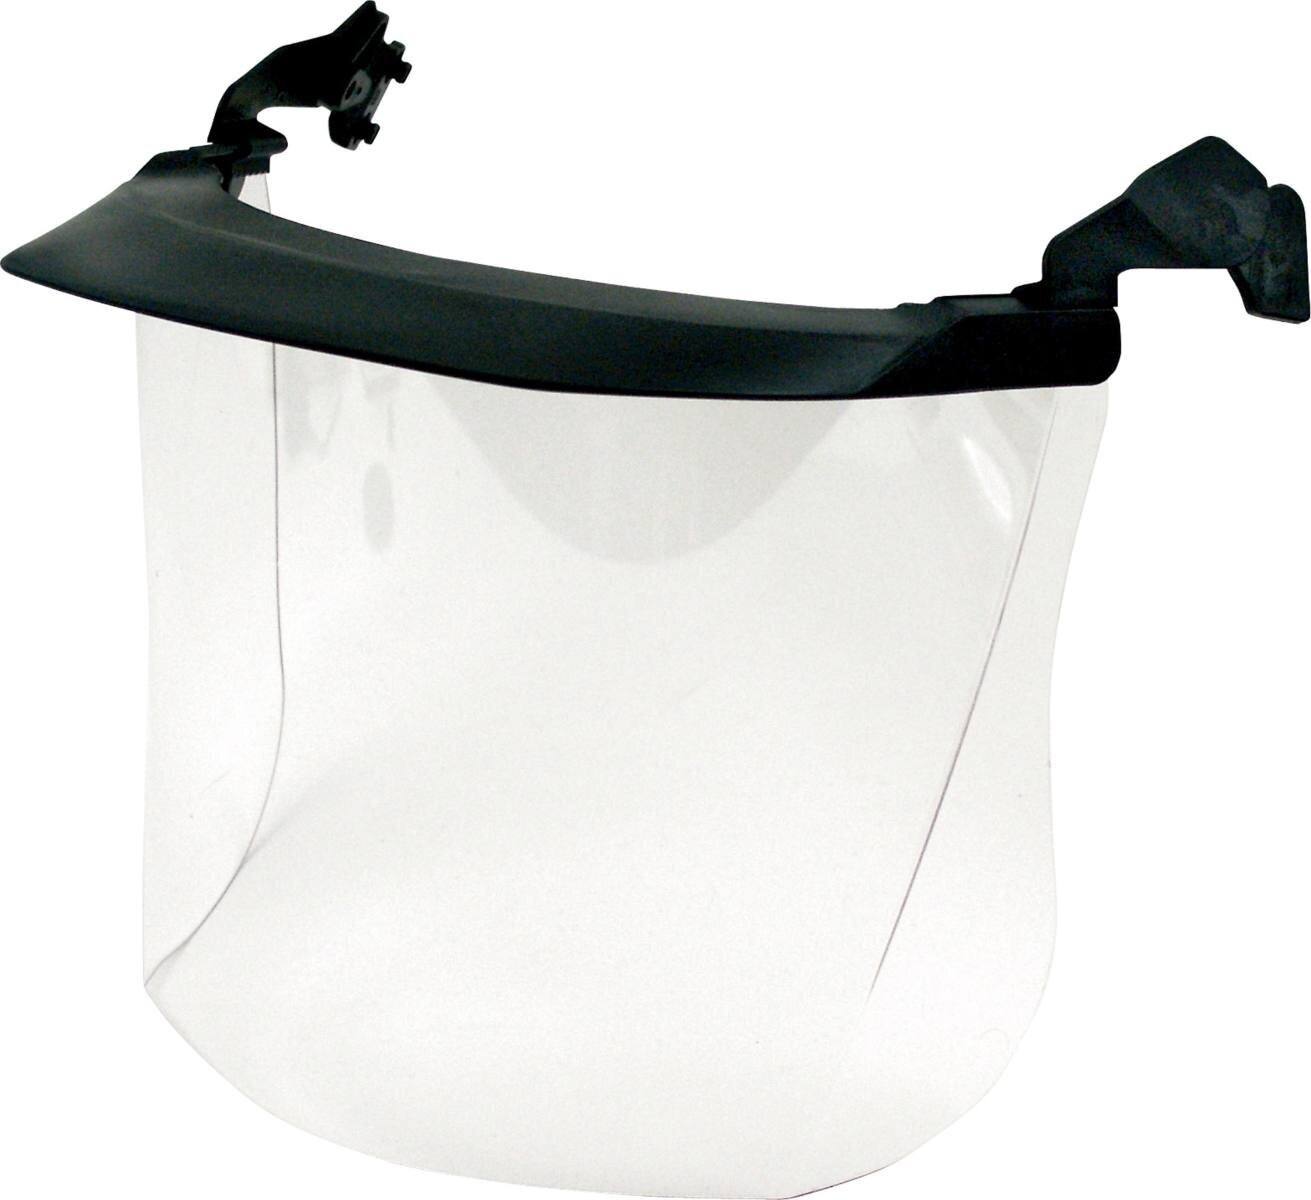 Visiera trasparente 3M V4H in policarbonato con schermo parasole estremamente resistente agli urti Spessore: 1,2 mm, peso: 120 g (incluso supporto per casco)